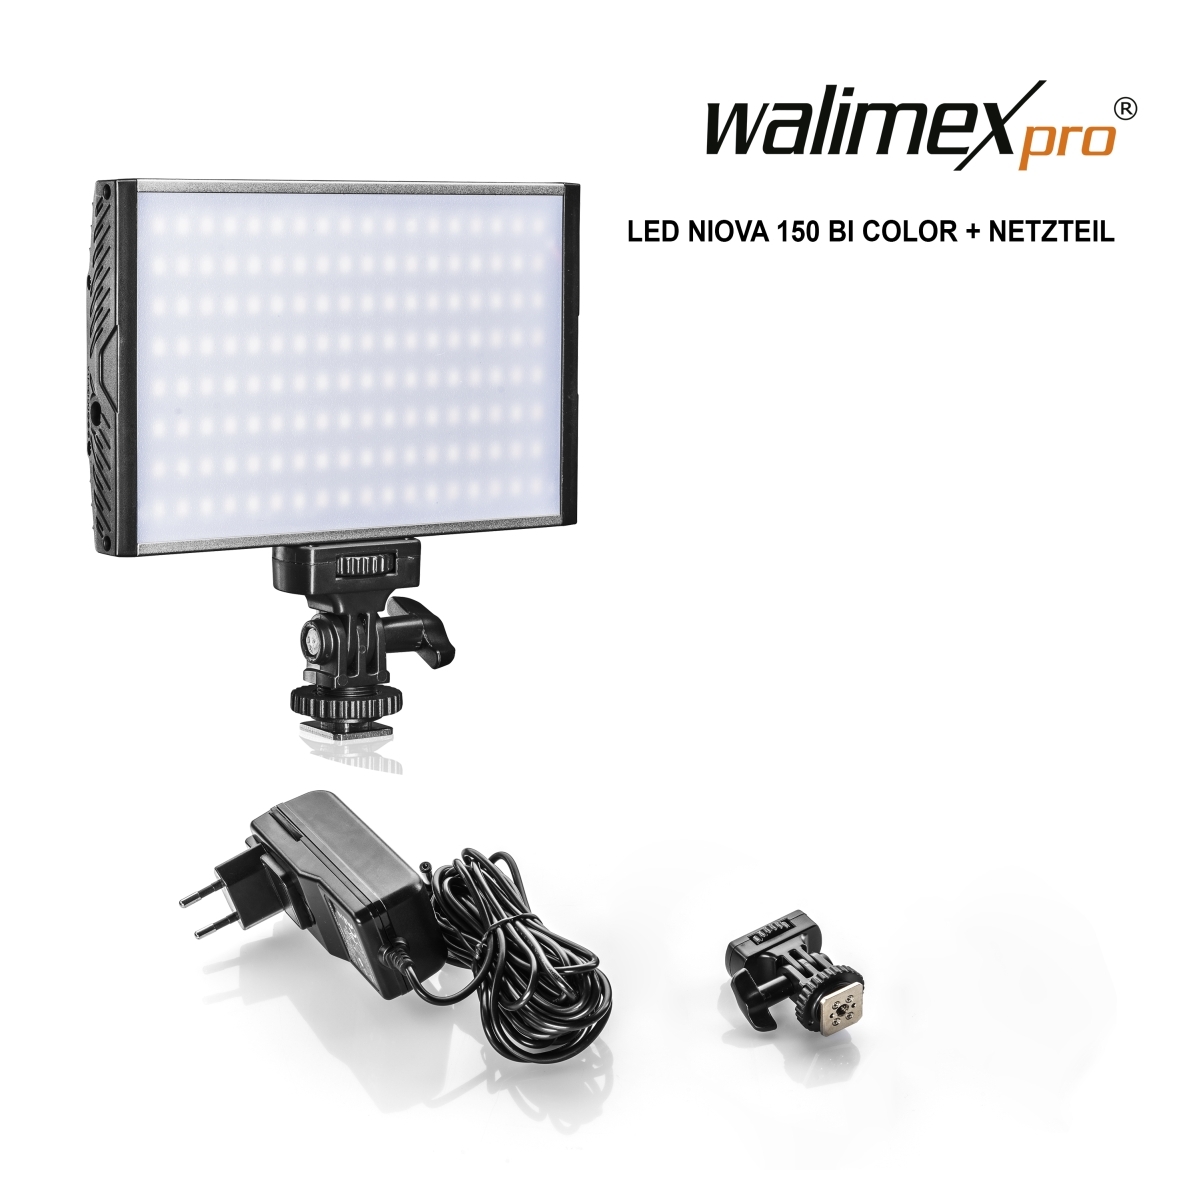 Walimex pro LED Niova 150 Bi Color + Netzteil